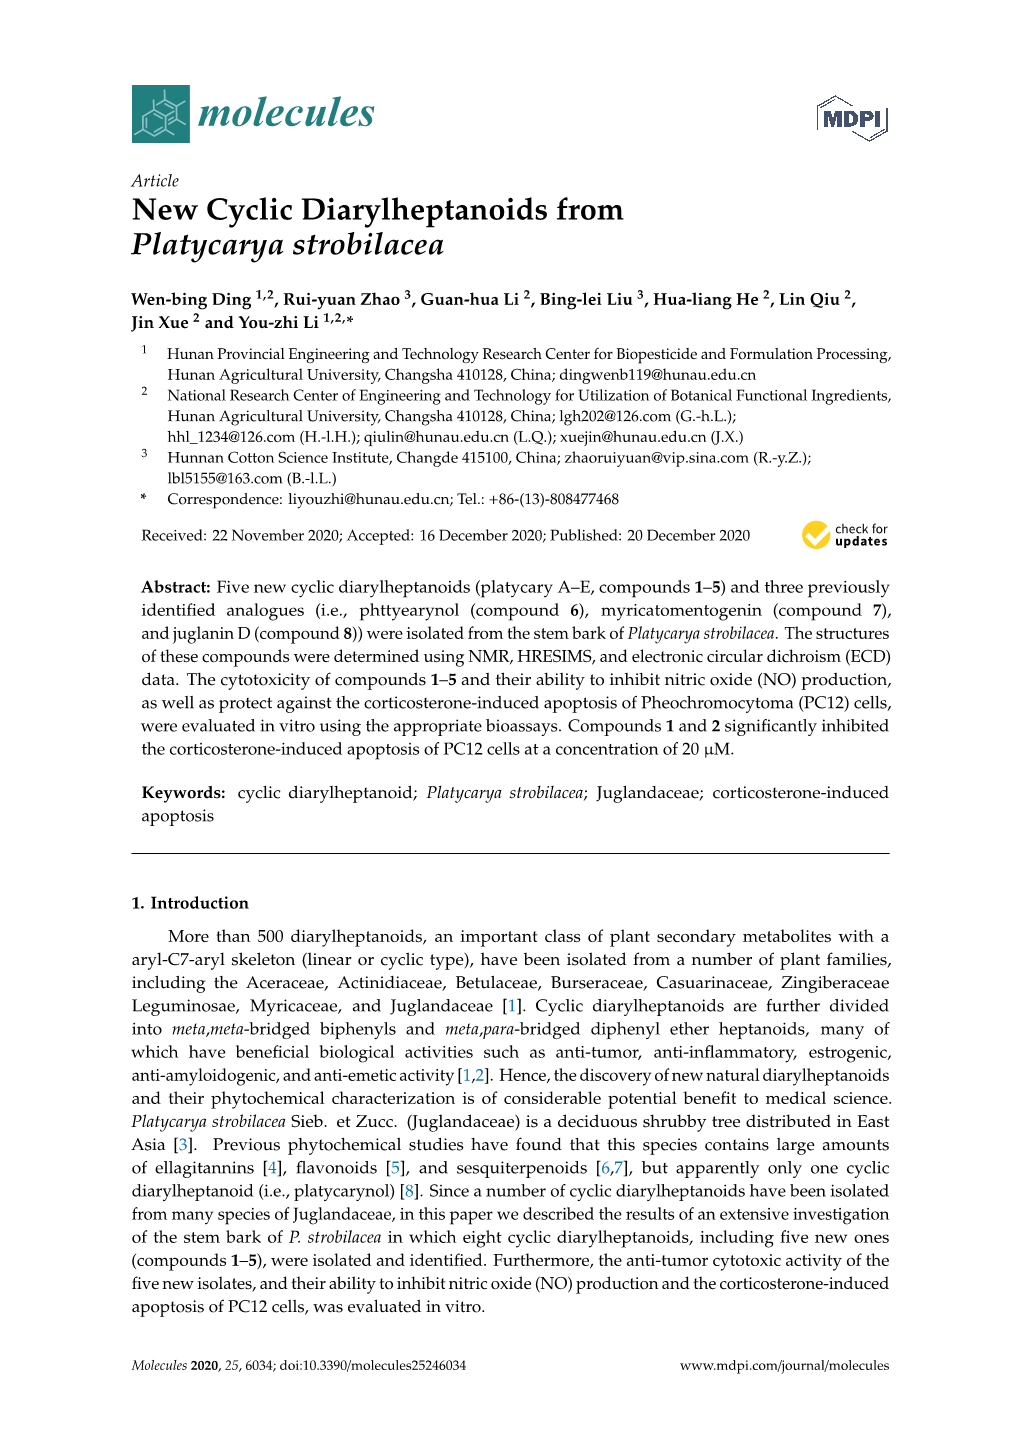 New Cyclic Diarylheptanoids from Platycarya Strobilacea